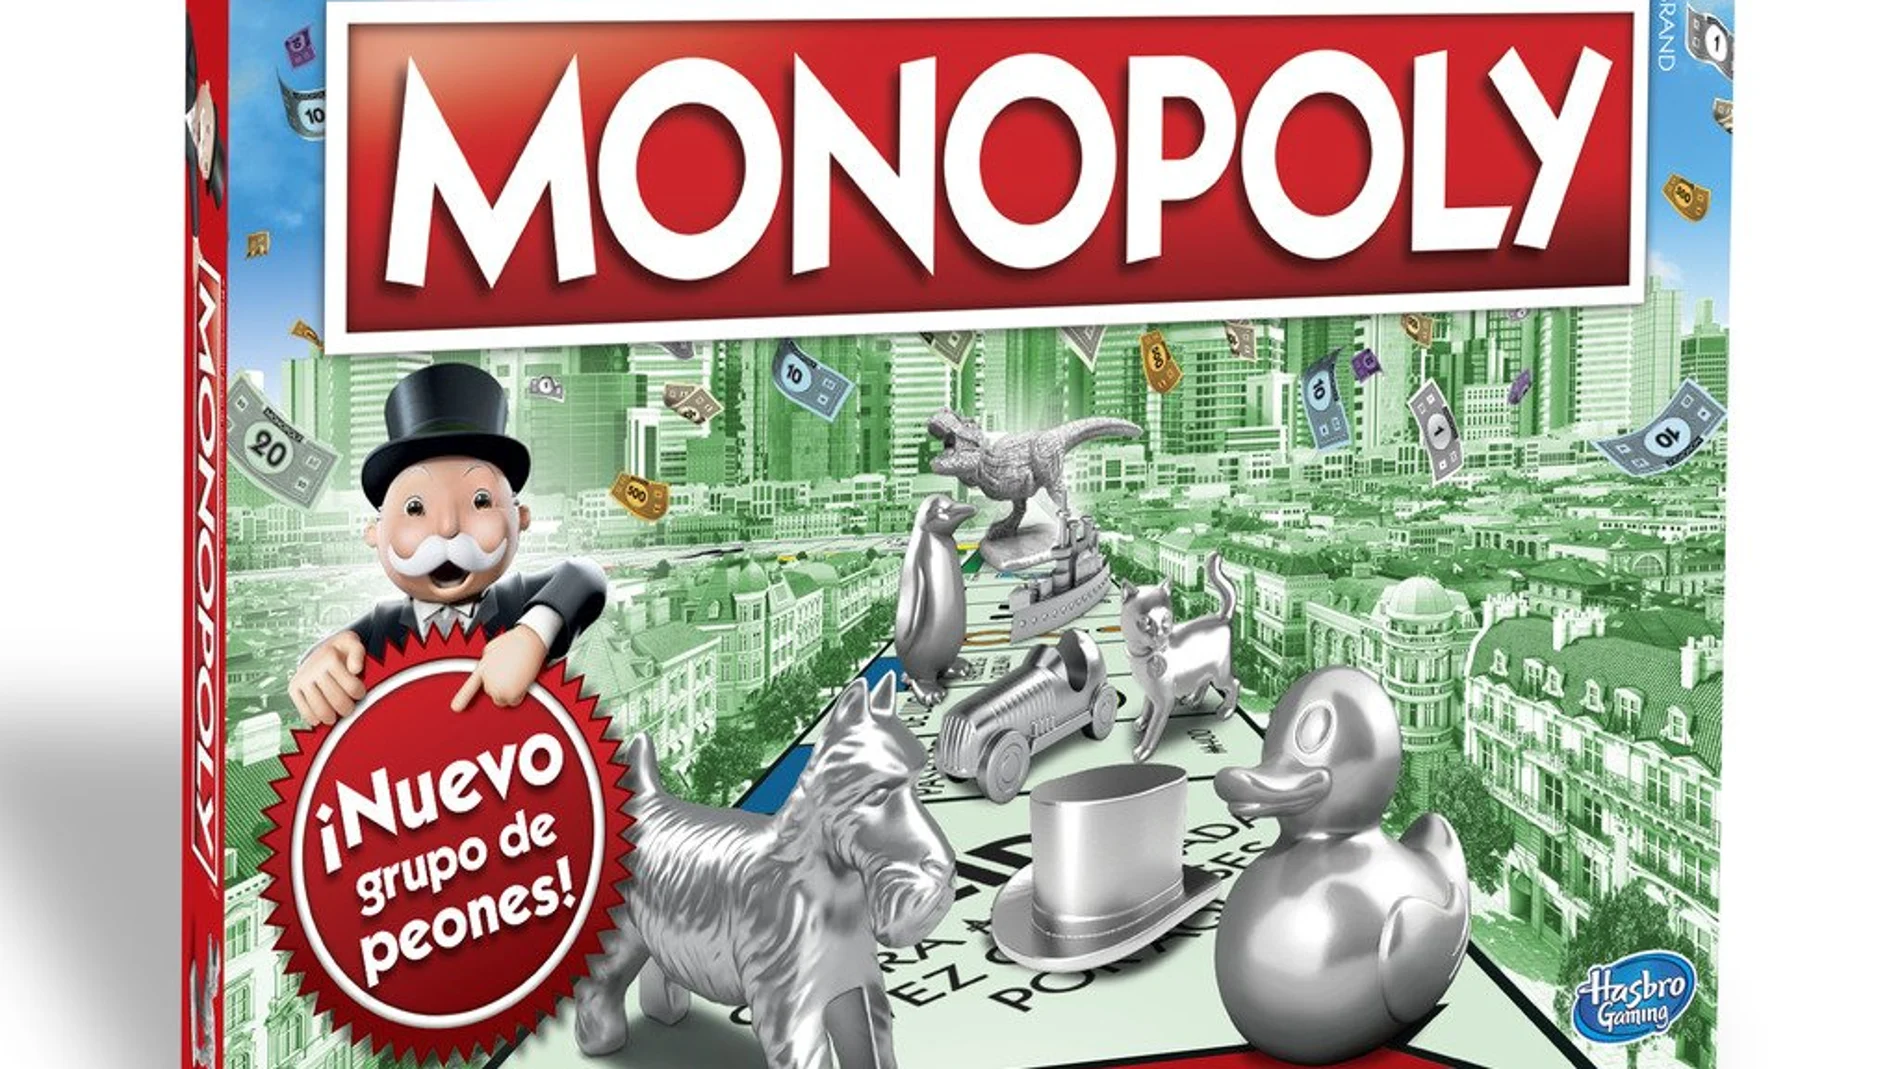 El Monopoly y otros juegos de mesa como el Risk, el Uno o el Cluedo, con grandes descuentos por el Amazon Prime Day